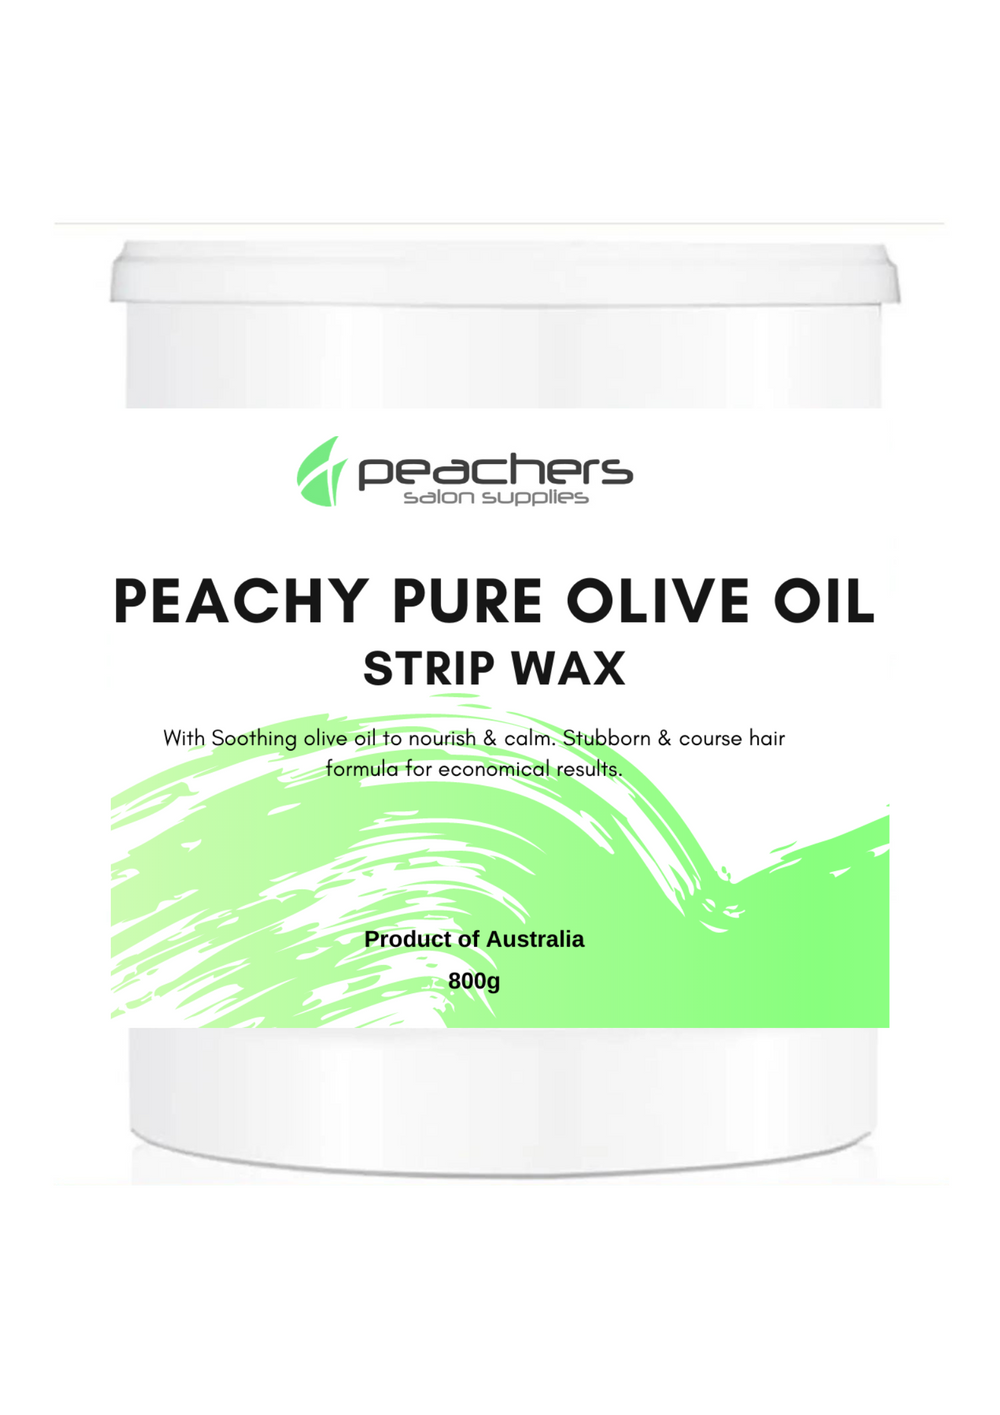 Peachers pure olive oil strip wax